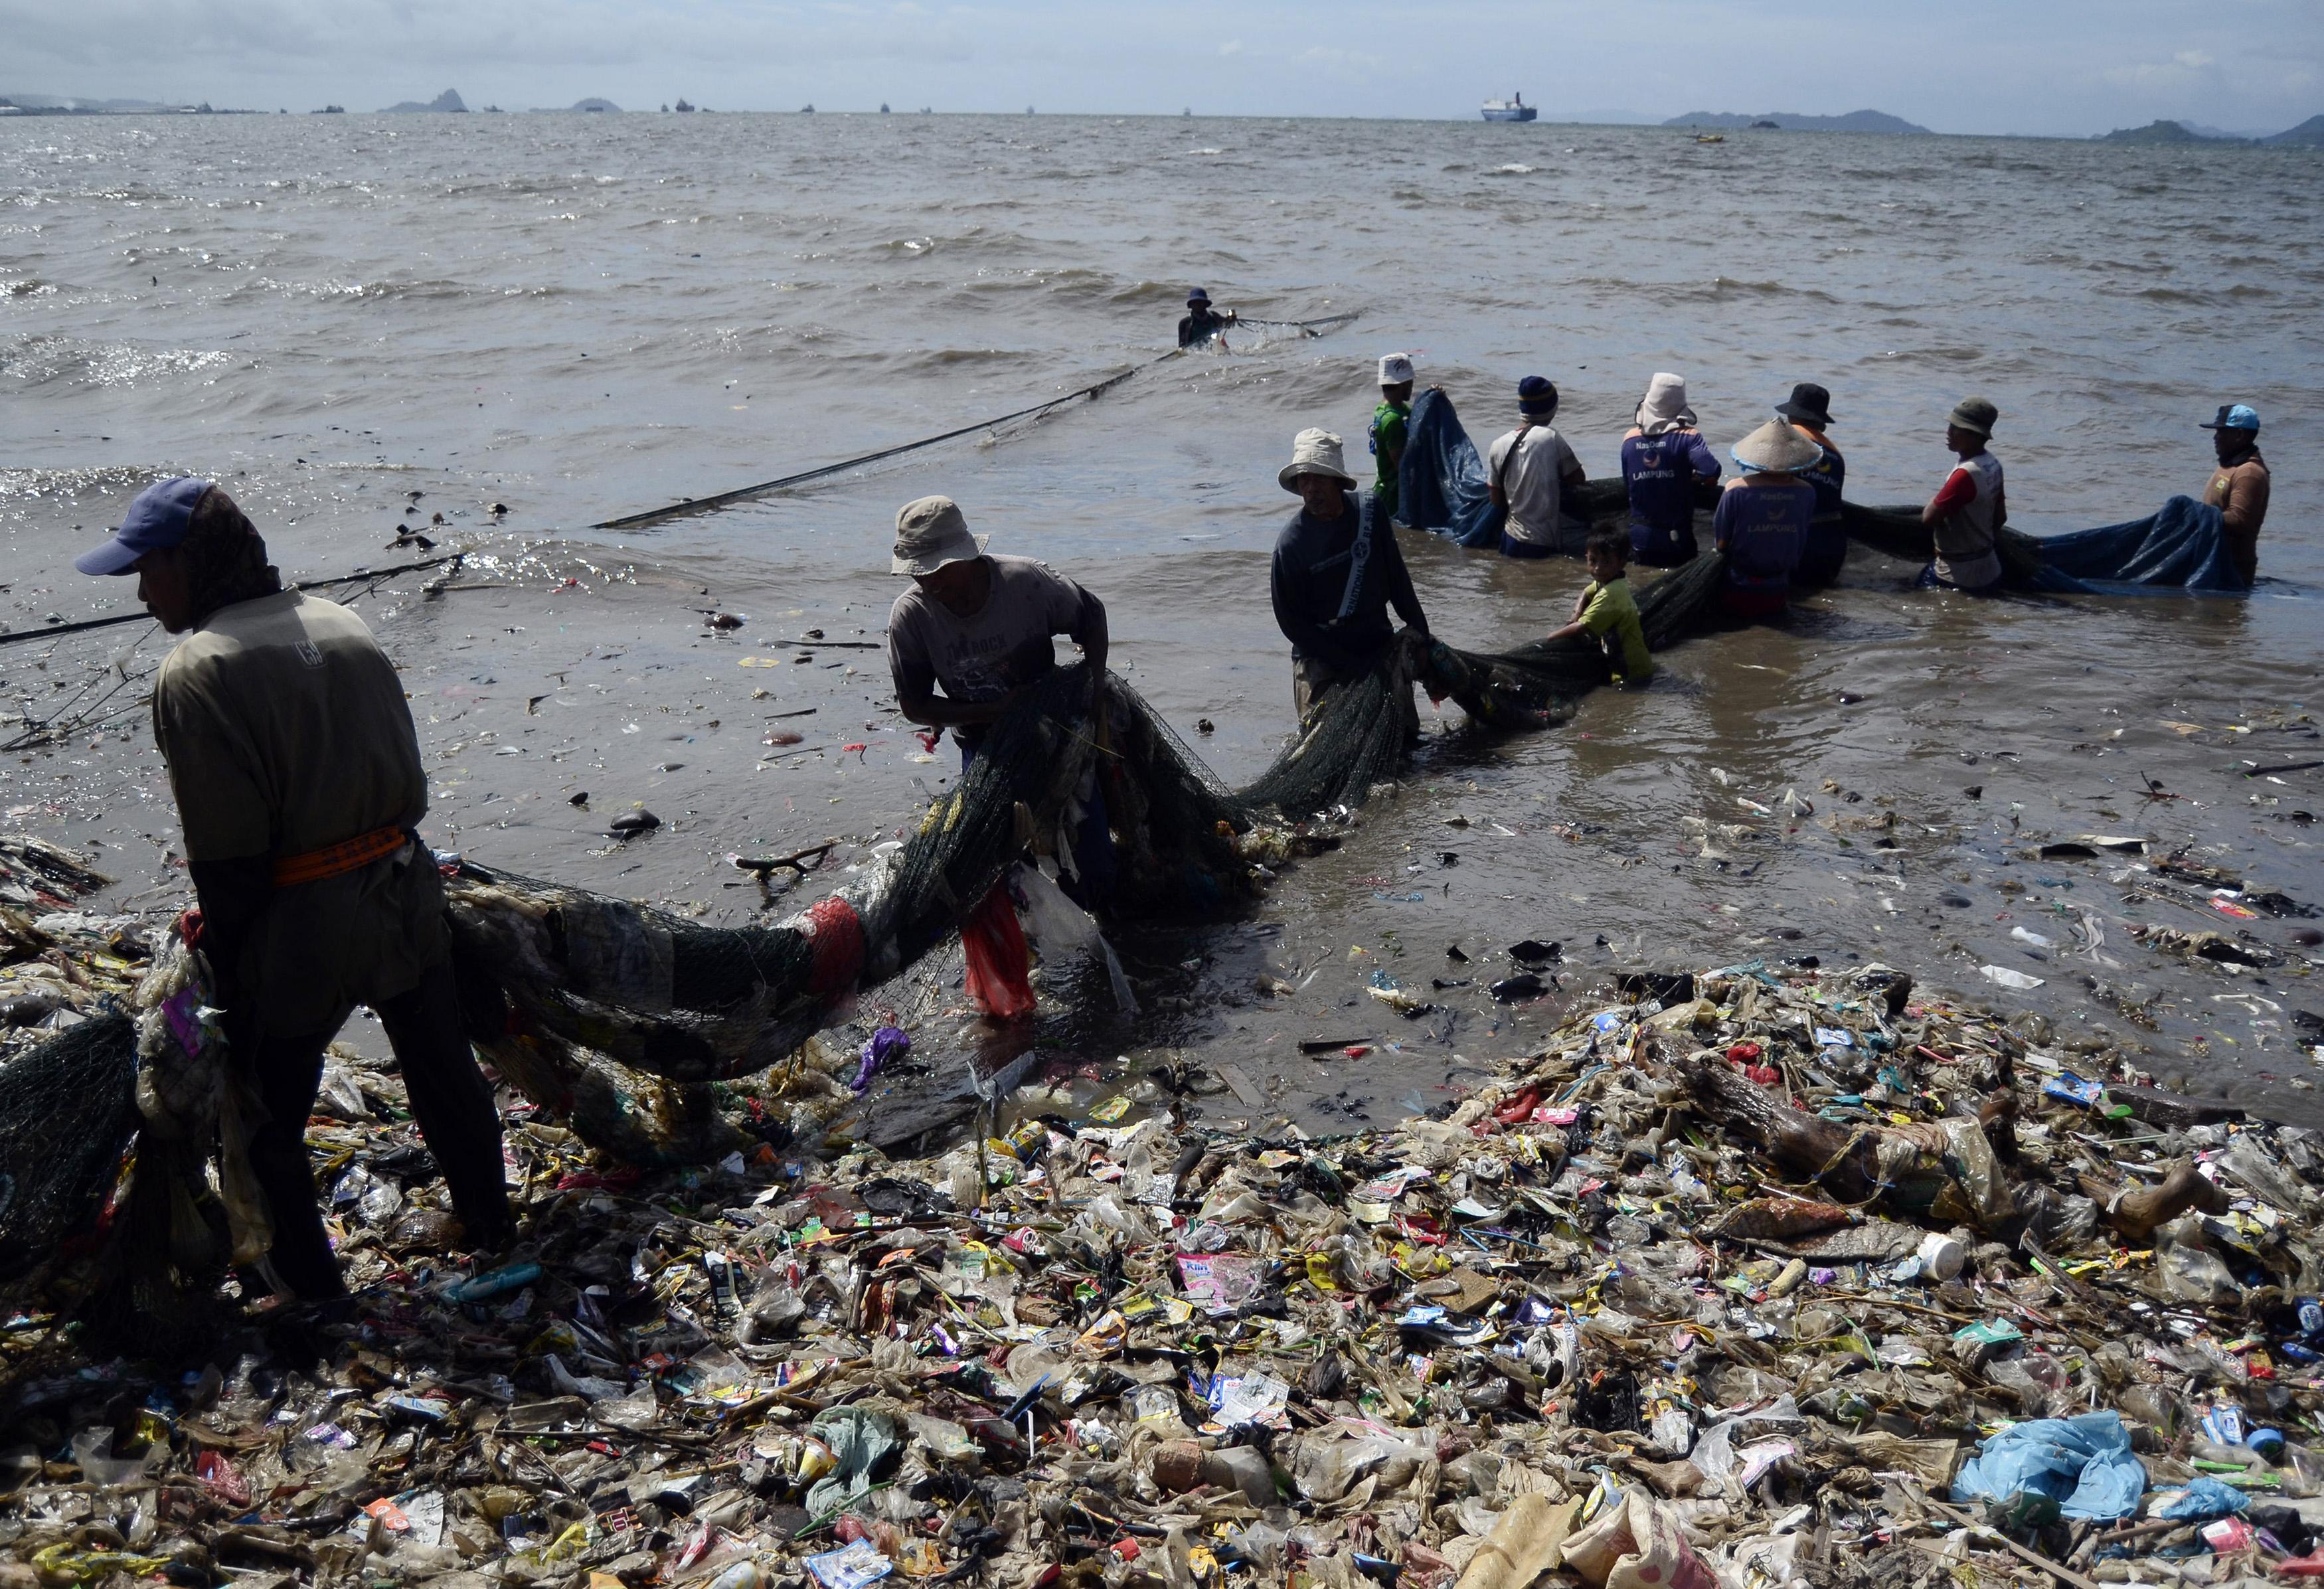 Kebijakan Luhut Soal Penanganan Plastik di Laut Diragukan